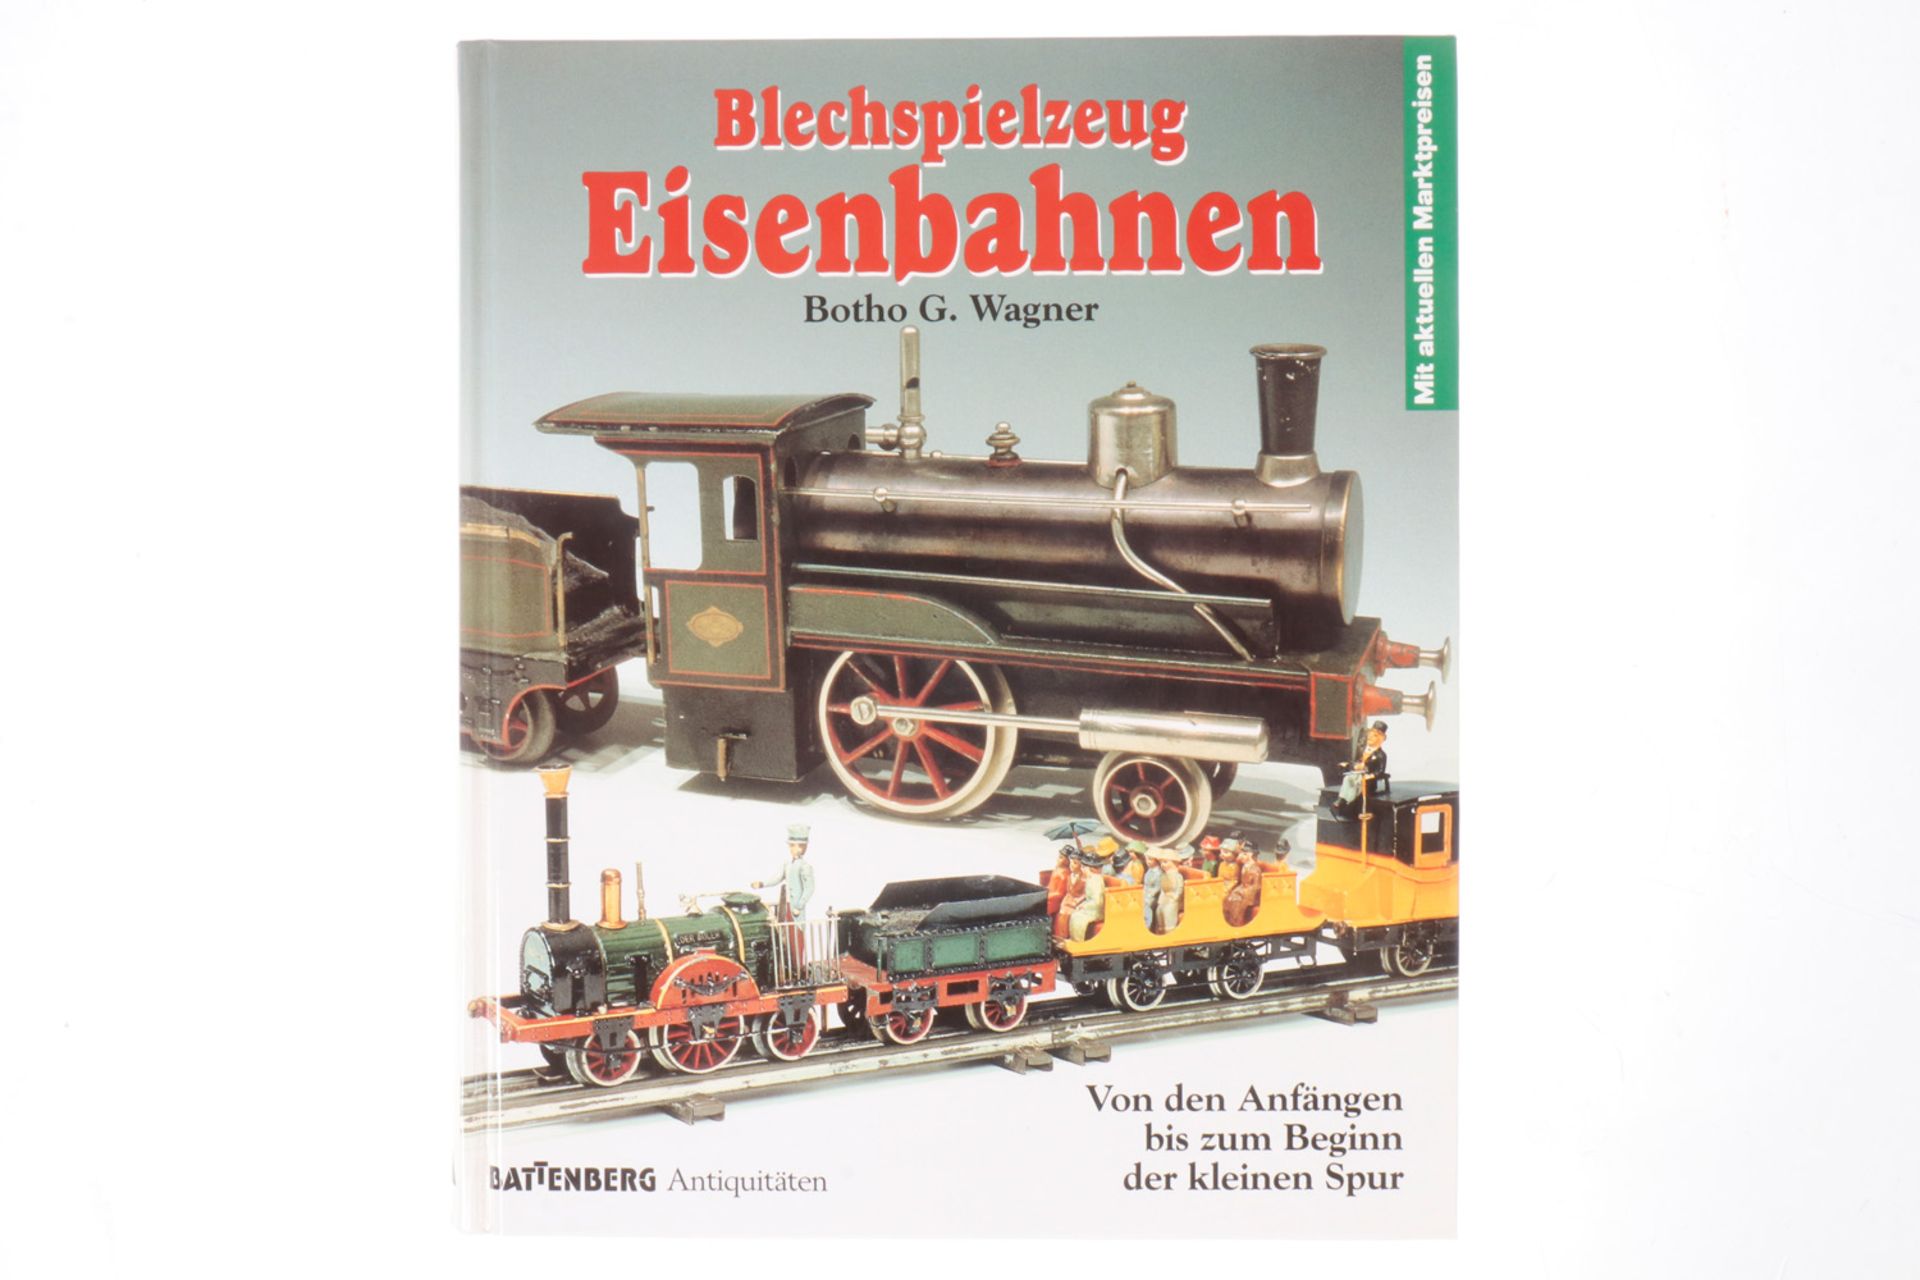 Battenberg-Buch "Eisenbahnen", Alterungsspuren Battenberg-Buch "Eisenbahnen", Alterungsspuren